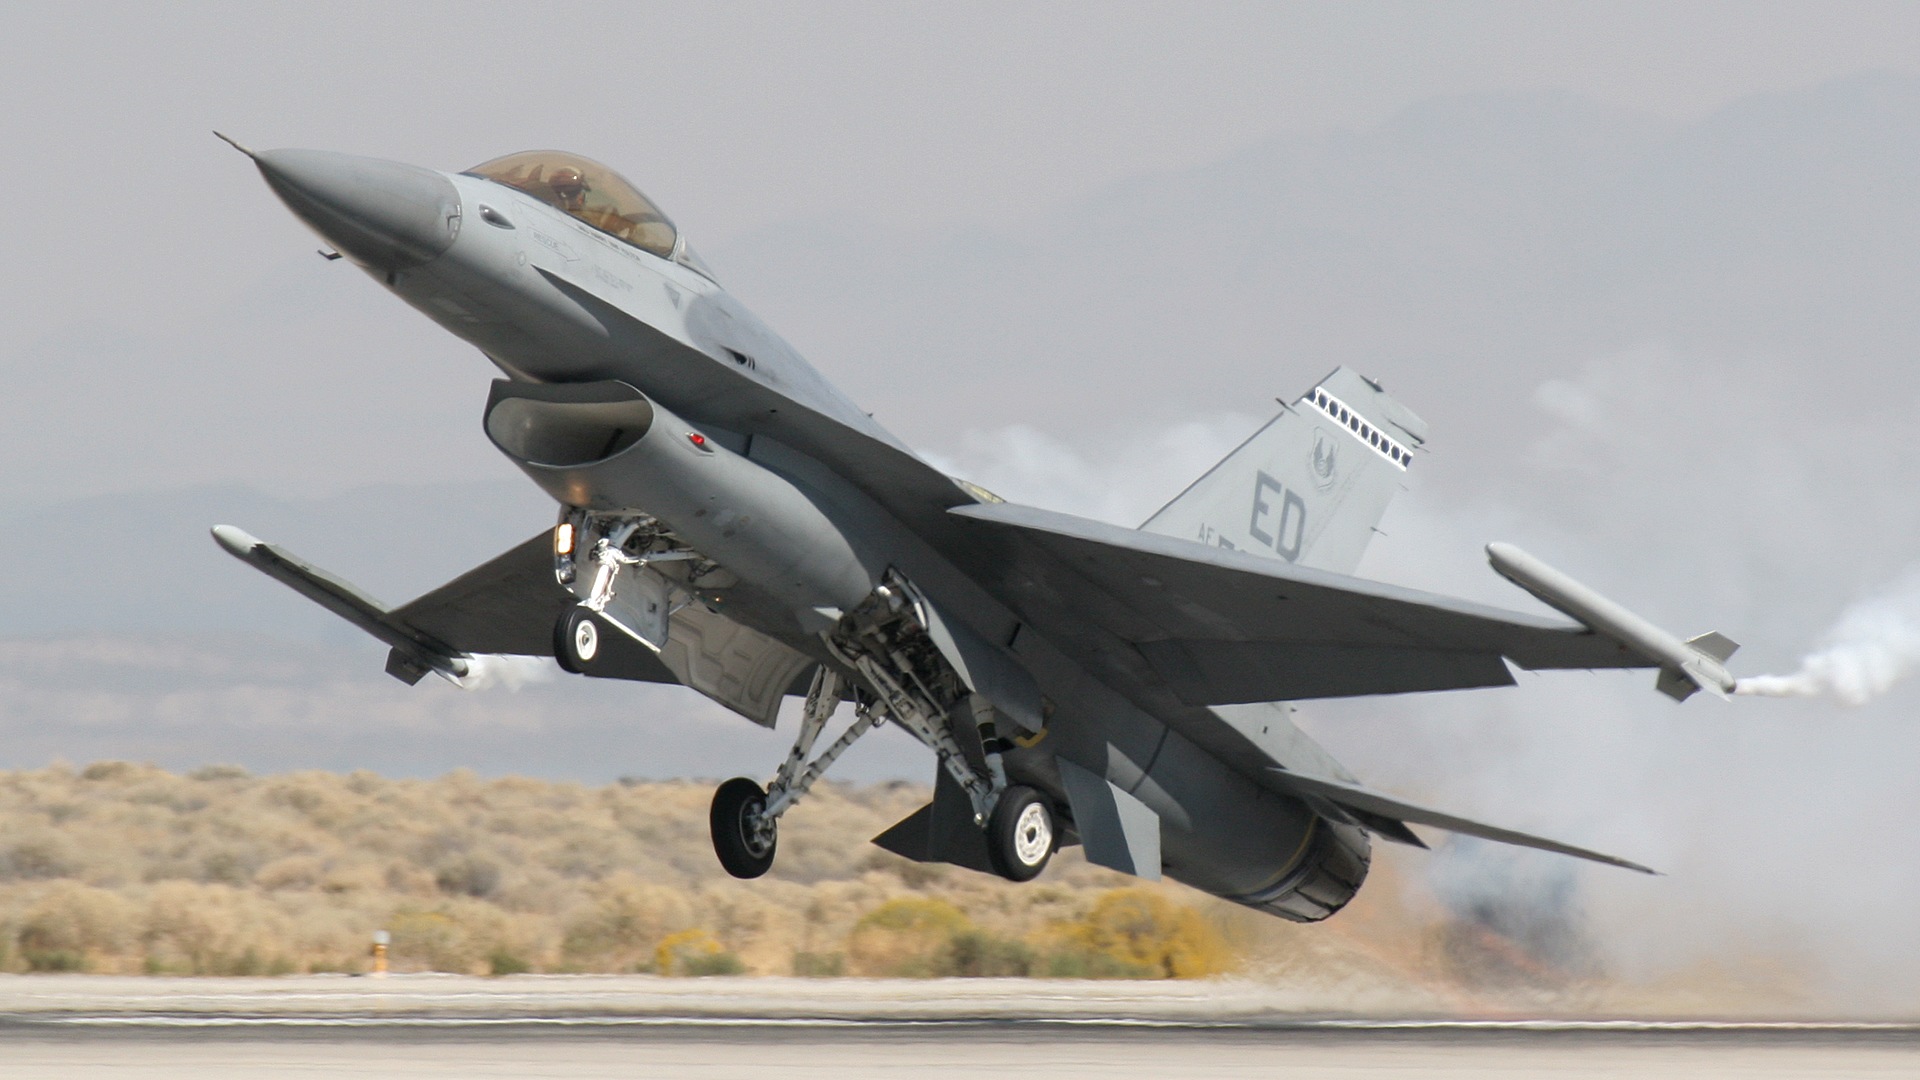 Chiến đấu cơ F-16 Fighting Falcon là một trong những dòng tiêm kích hiện đại nhất thế giới